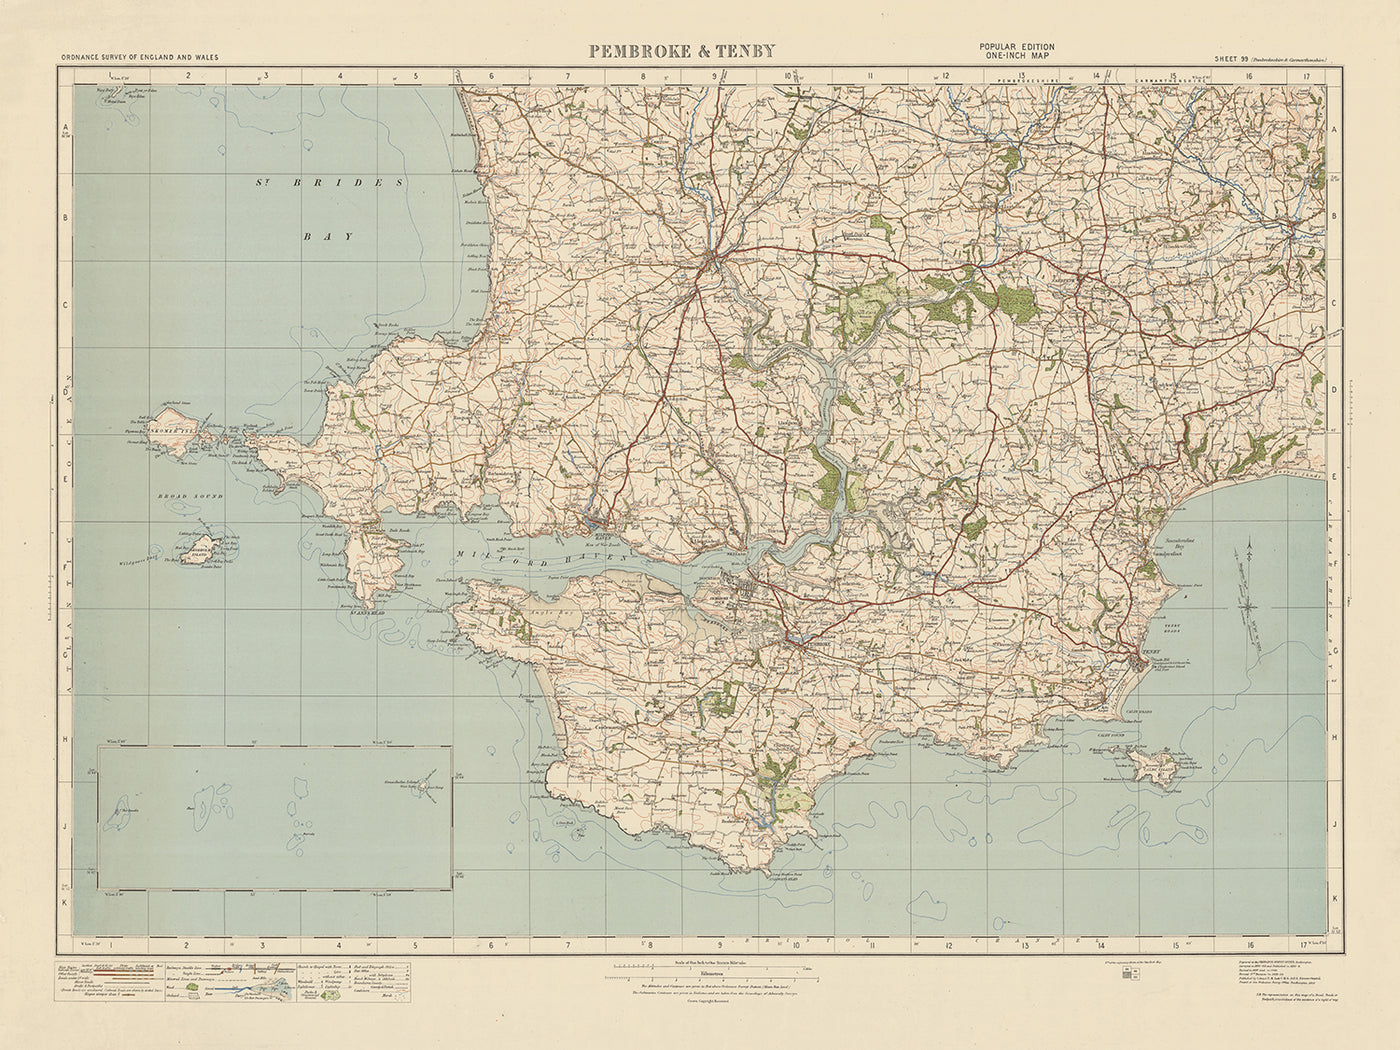 Old Ordnance Survey Map, Sheet 99 - Pembroke & Tenby, 1925: Neyland, Milford Haven, Haverfordwest, Narberth, Pembrokshire Coast National Park